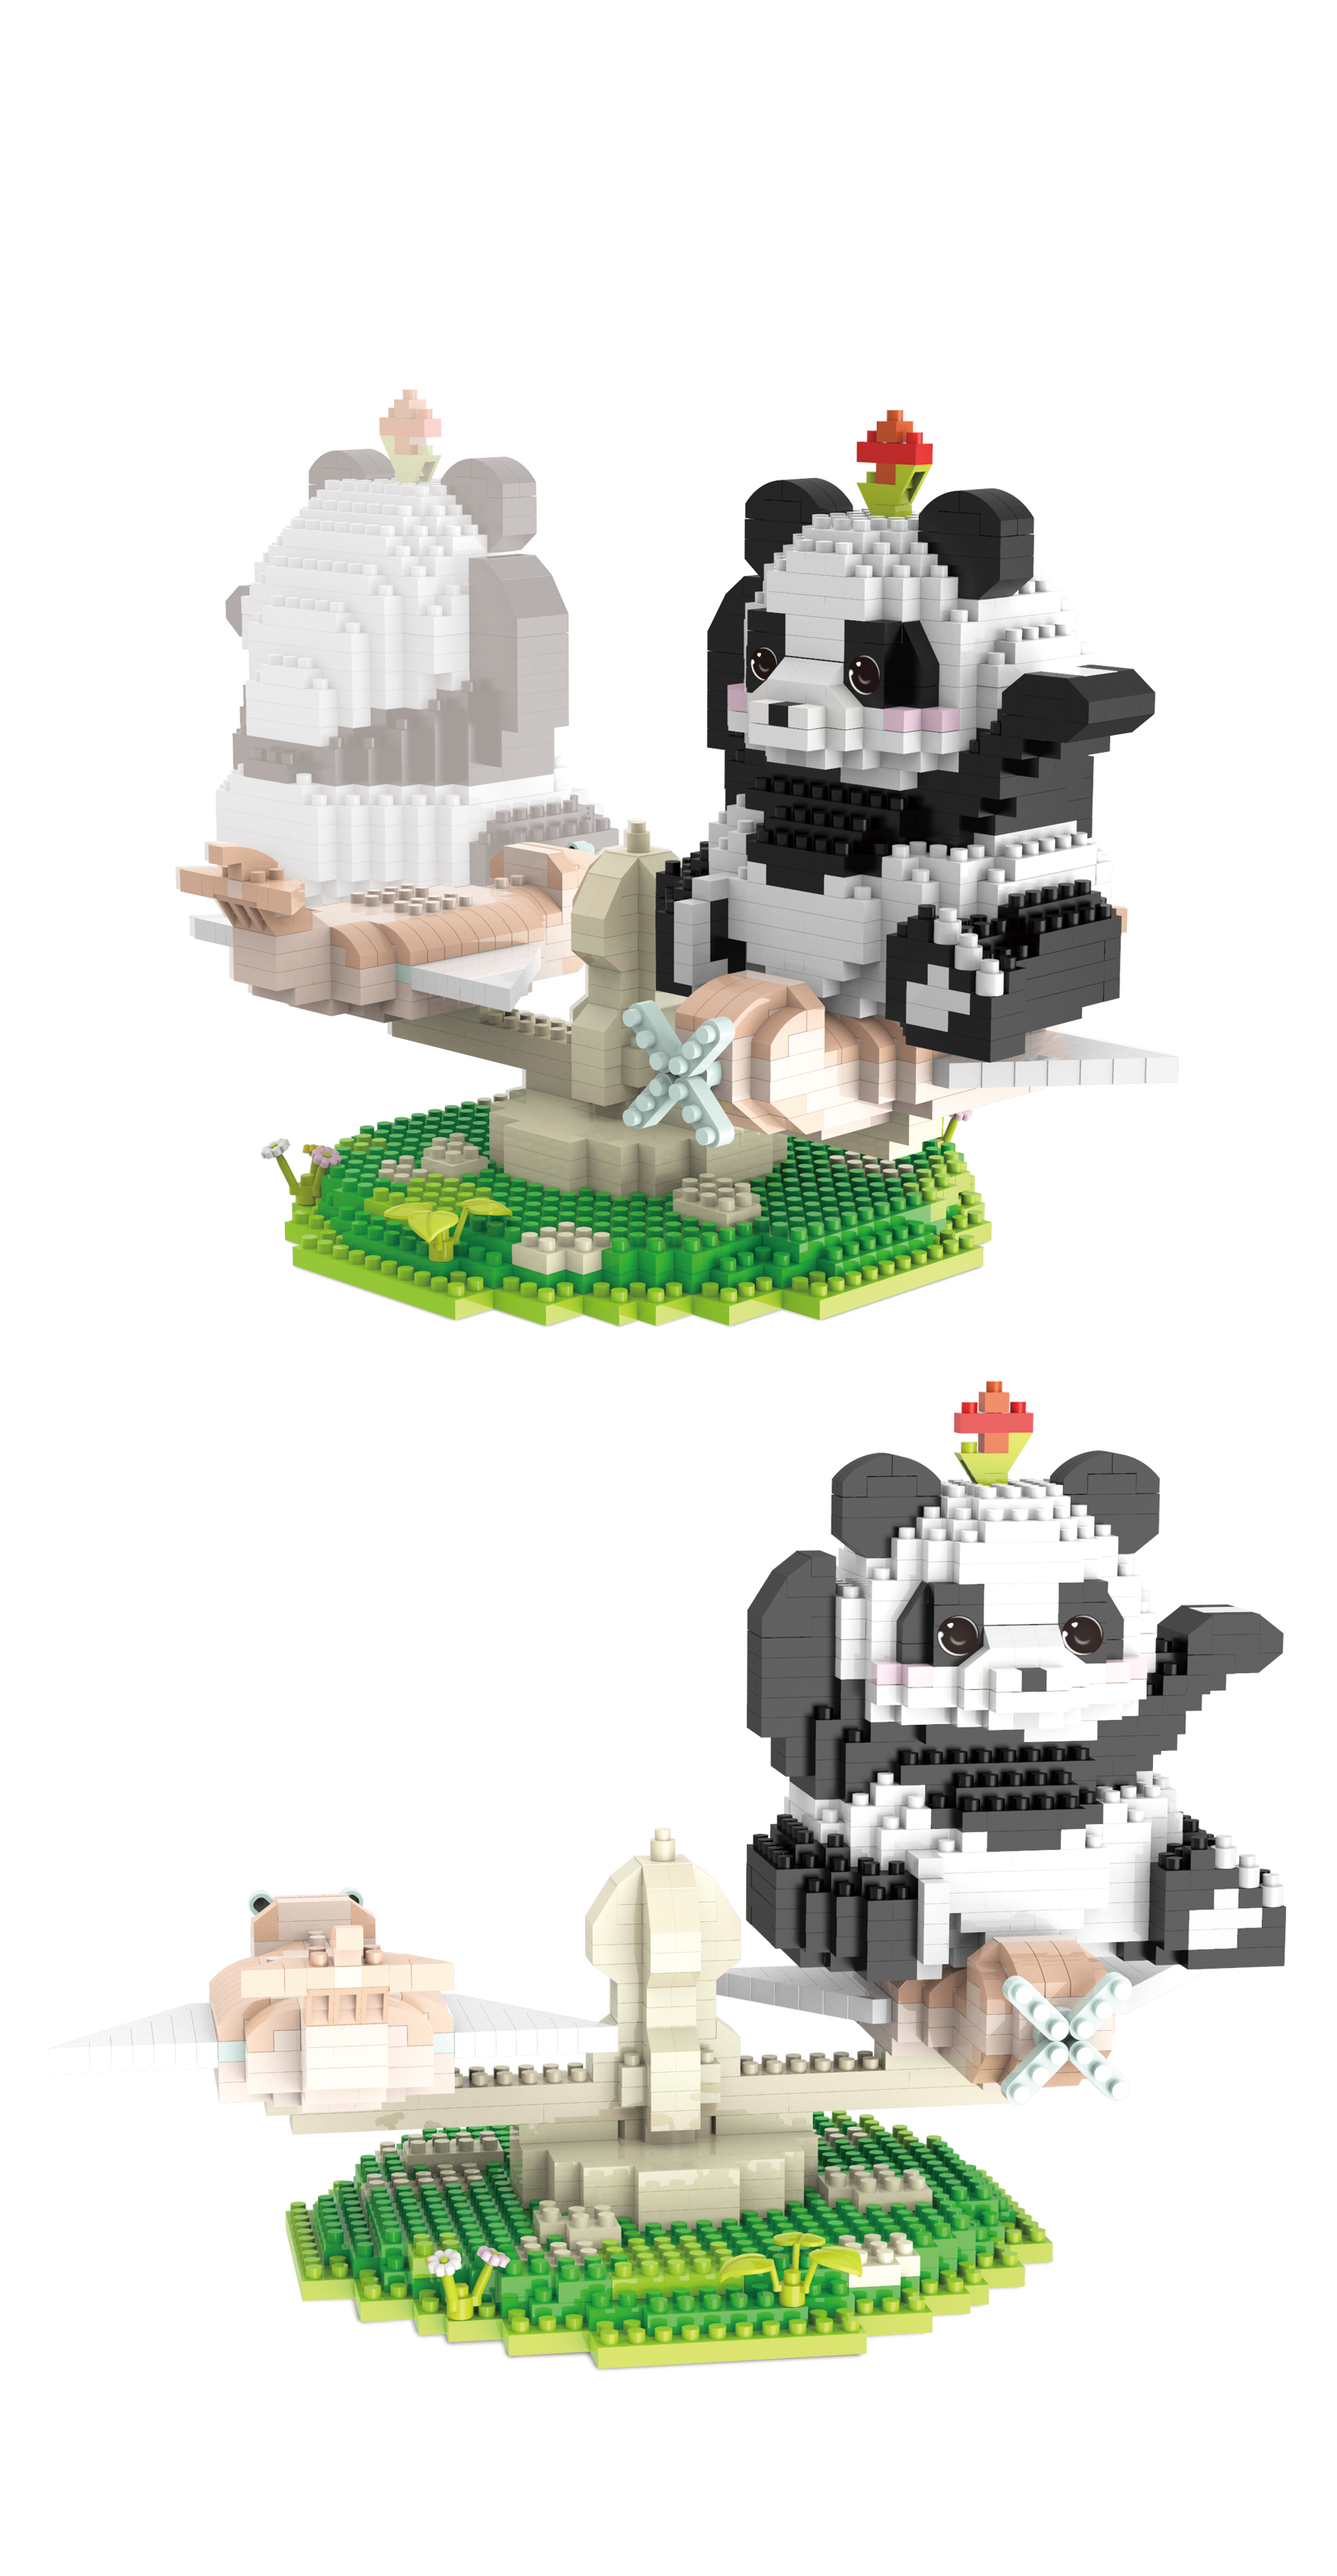 Конструктор 3Д из миниблоков RTOY Веселая панда, подвижные элементы 100 дет. конструктор 3d из миниблоков rtoy любимые животные панда кушает бамбук 920 эл jm20814